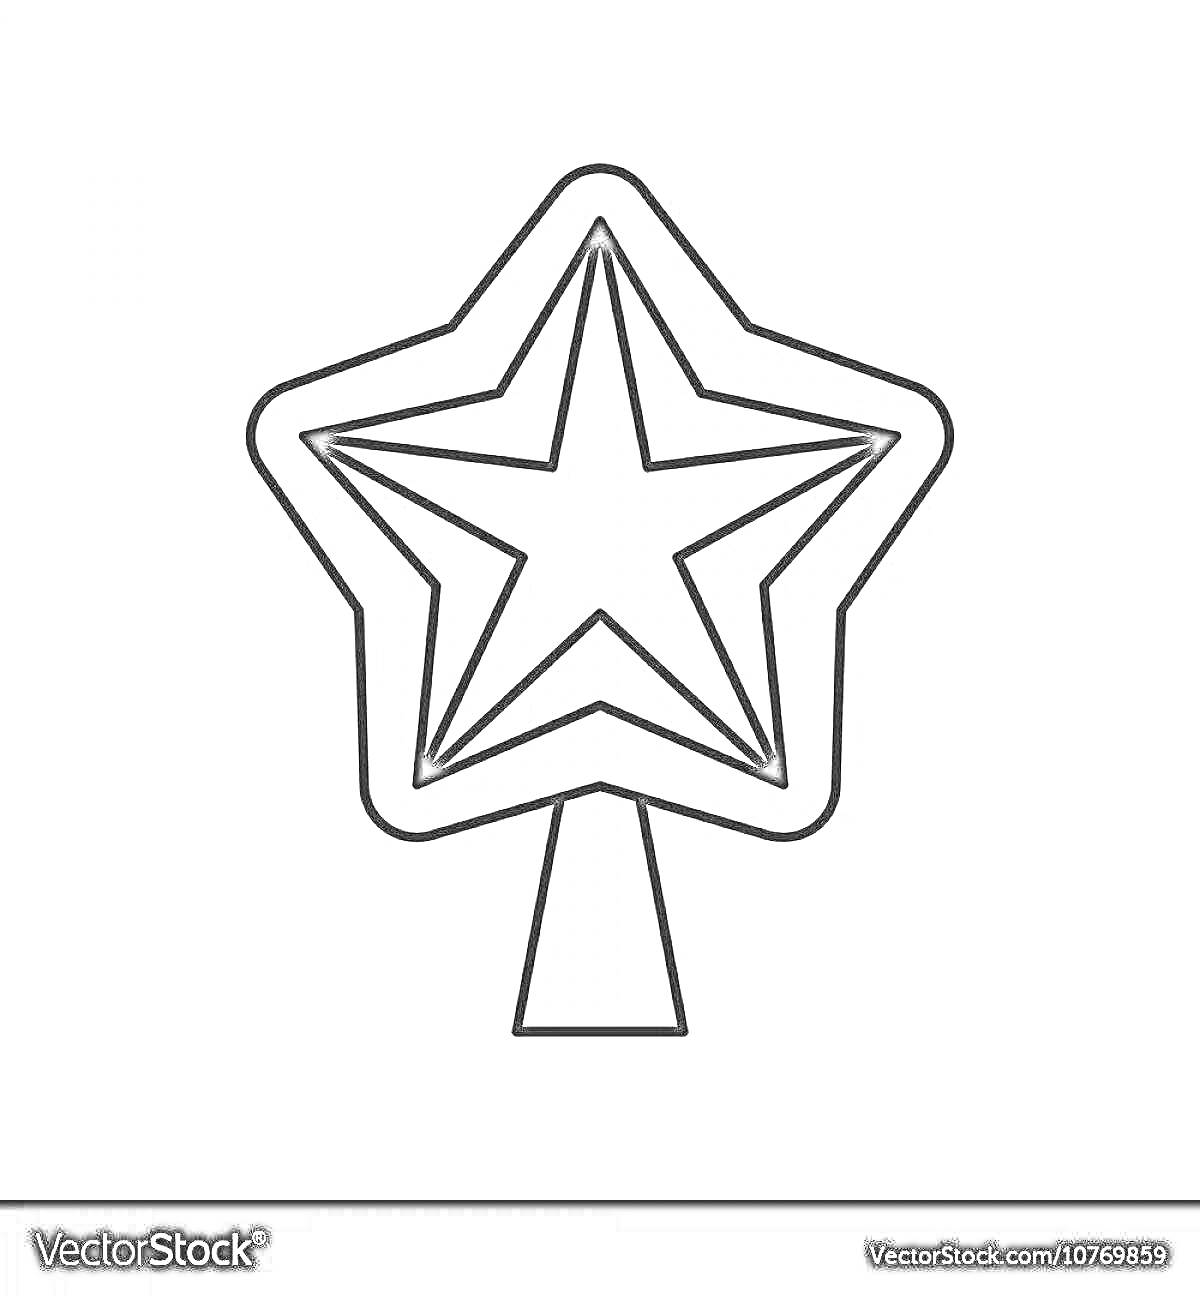 Раскраска Контурная раскраска: советская пятиконечная звезда на подставке